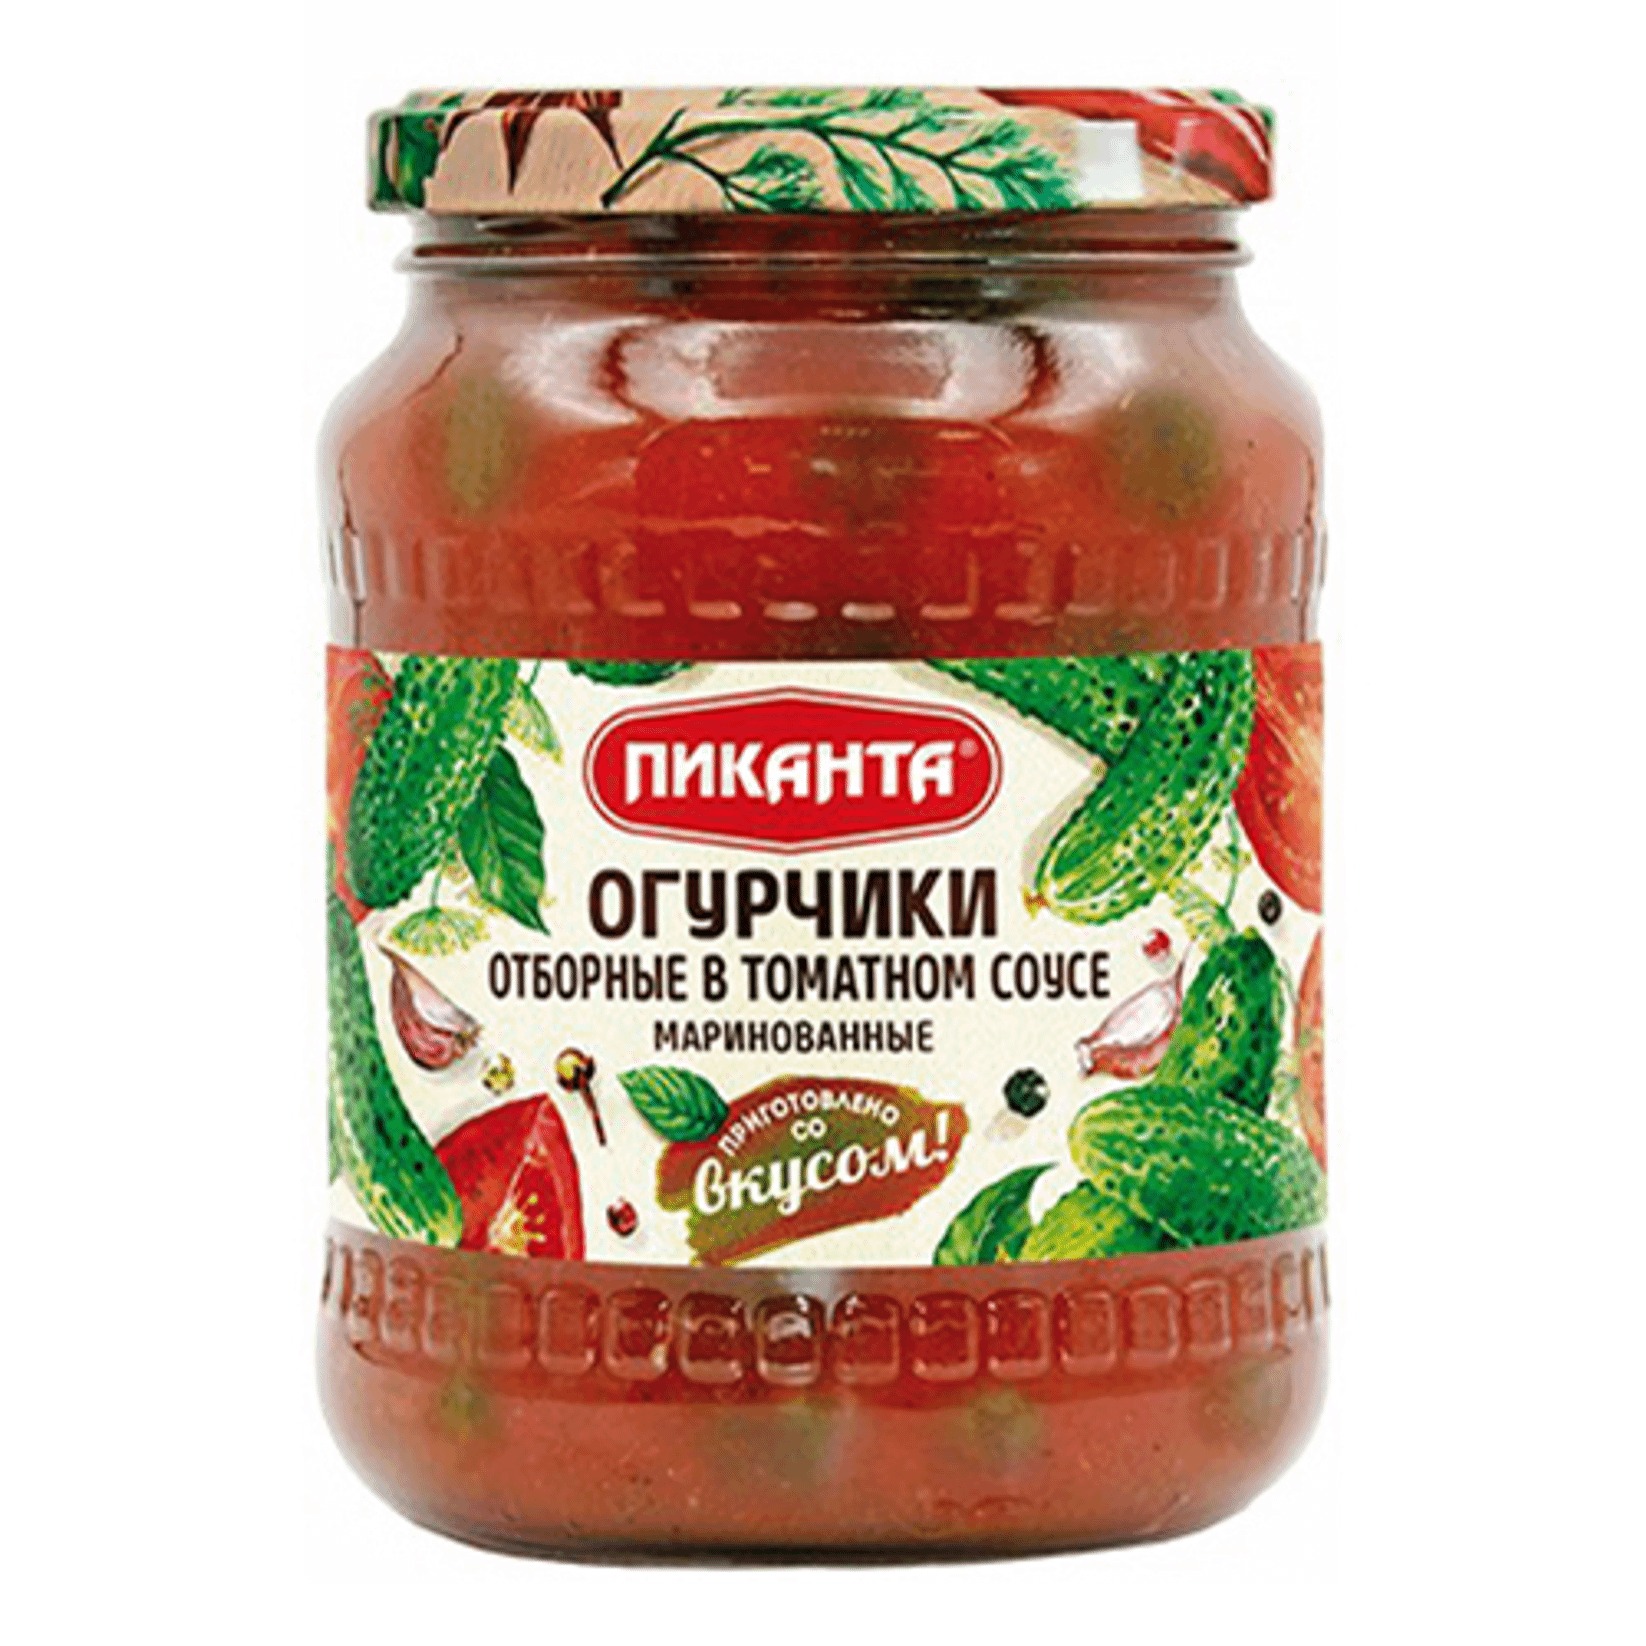 Огурчики Пиканта маринованные в томатном соусе, 700 г килька балтийская донская кухня в томатном соусе 240 г